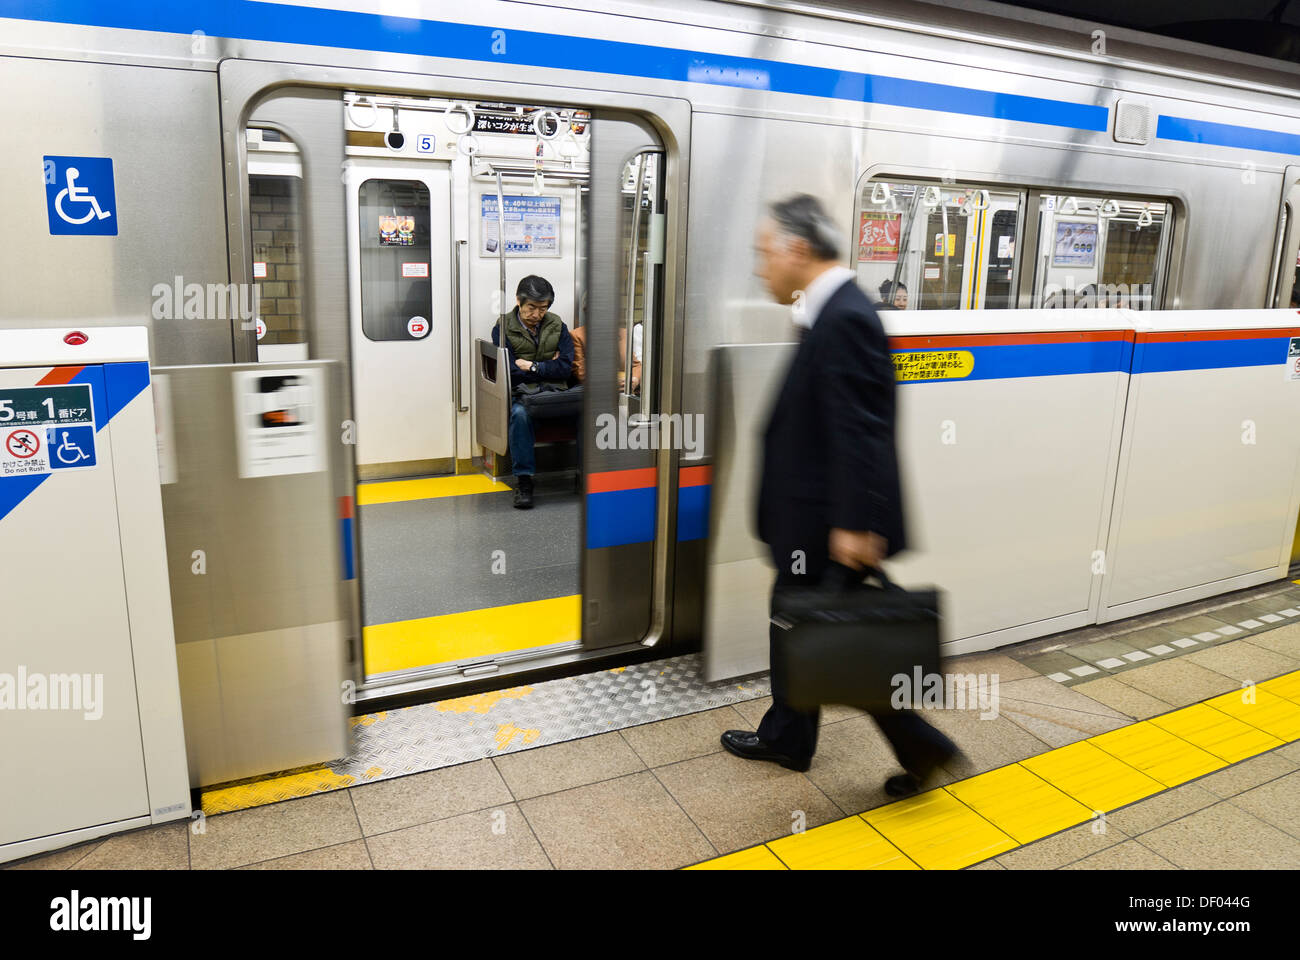 La plate-forme à la station de métro Suidobashi, Tokyo, Japon, a des barrières de sécurité qui s'ouvrent seulement quand le train arrive. Banque D'Images